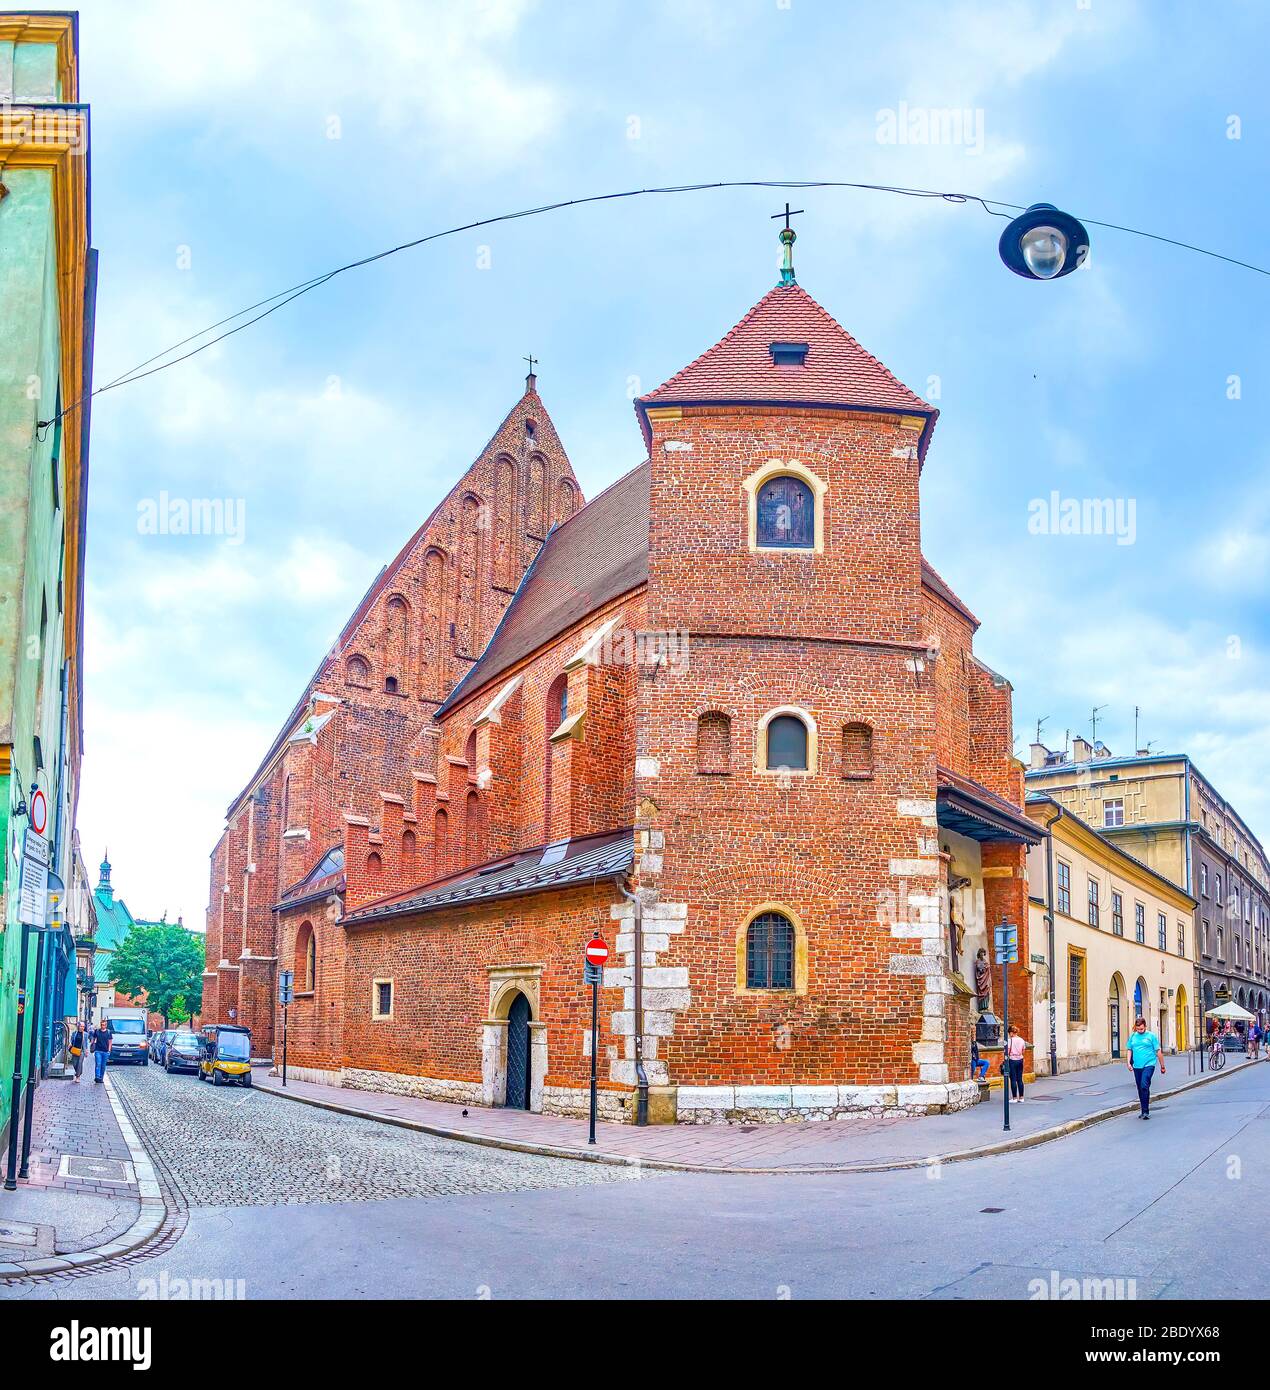 CRACOVIA, POLONIA - 12 GIUGNO 2018: La vista sulla chiesa medievale di San Marco in stile gotico nella vecchia Cracovia, una delle più antiche della città, il 12 giugno a Cracovia Foto Stock